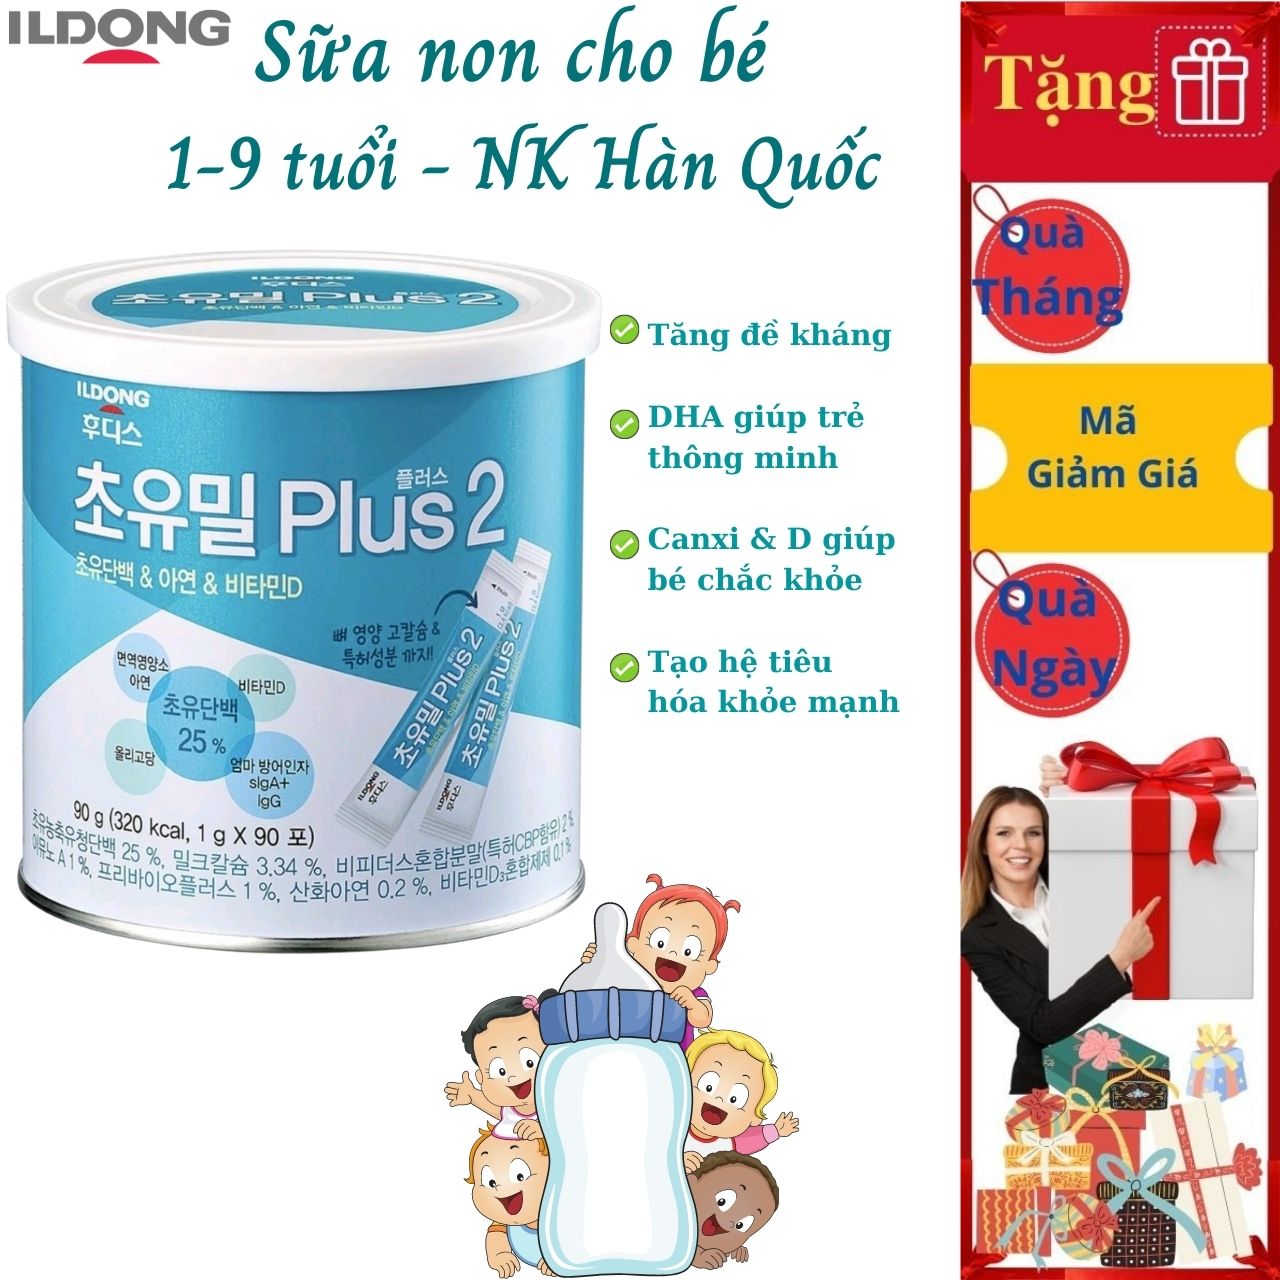 Sữa non cho bé từ 1-9 tuổi Ildong Plus 2 Hàn Bổ sung dinh dưỡng giúp phát triển trí não, xương, răng, tăng sức đề kháng, tiêu hóa tốt - Massel Official